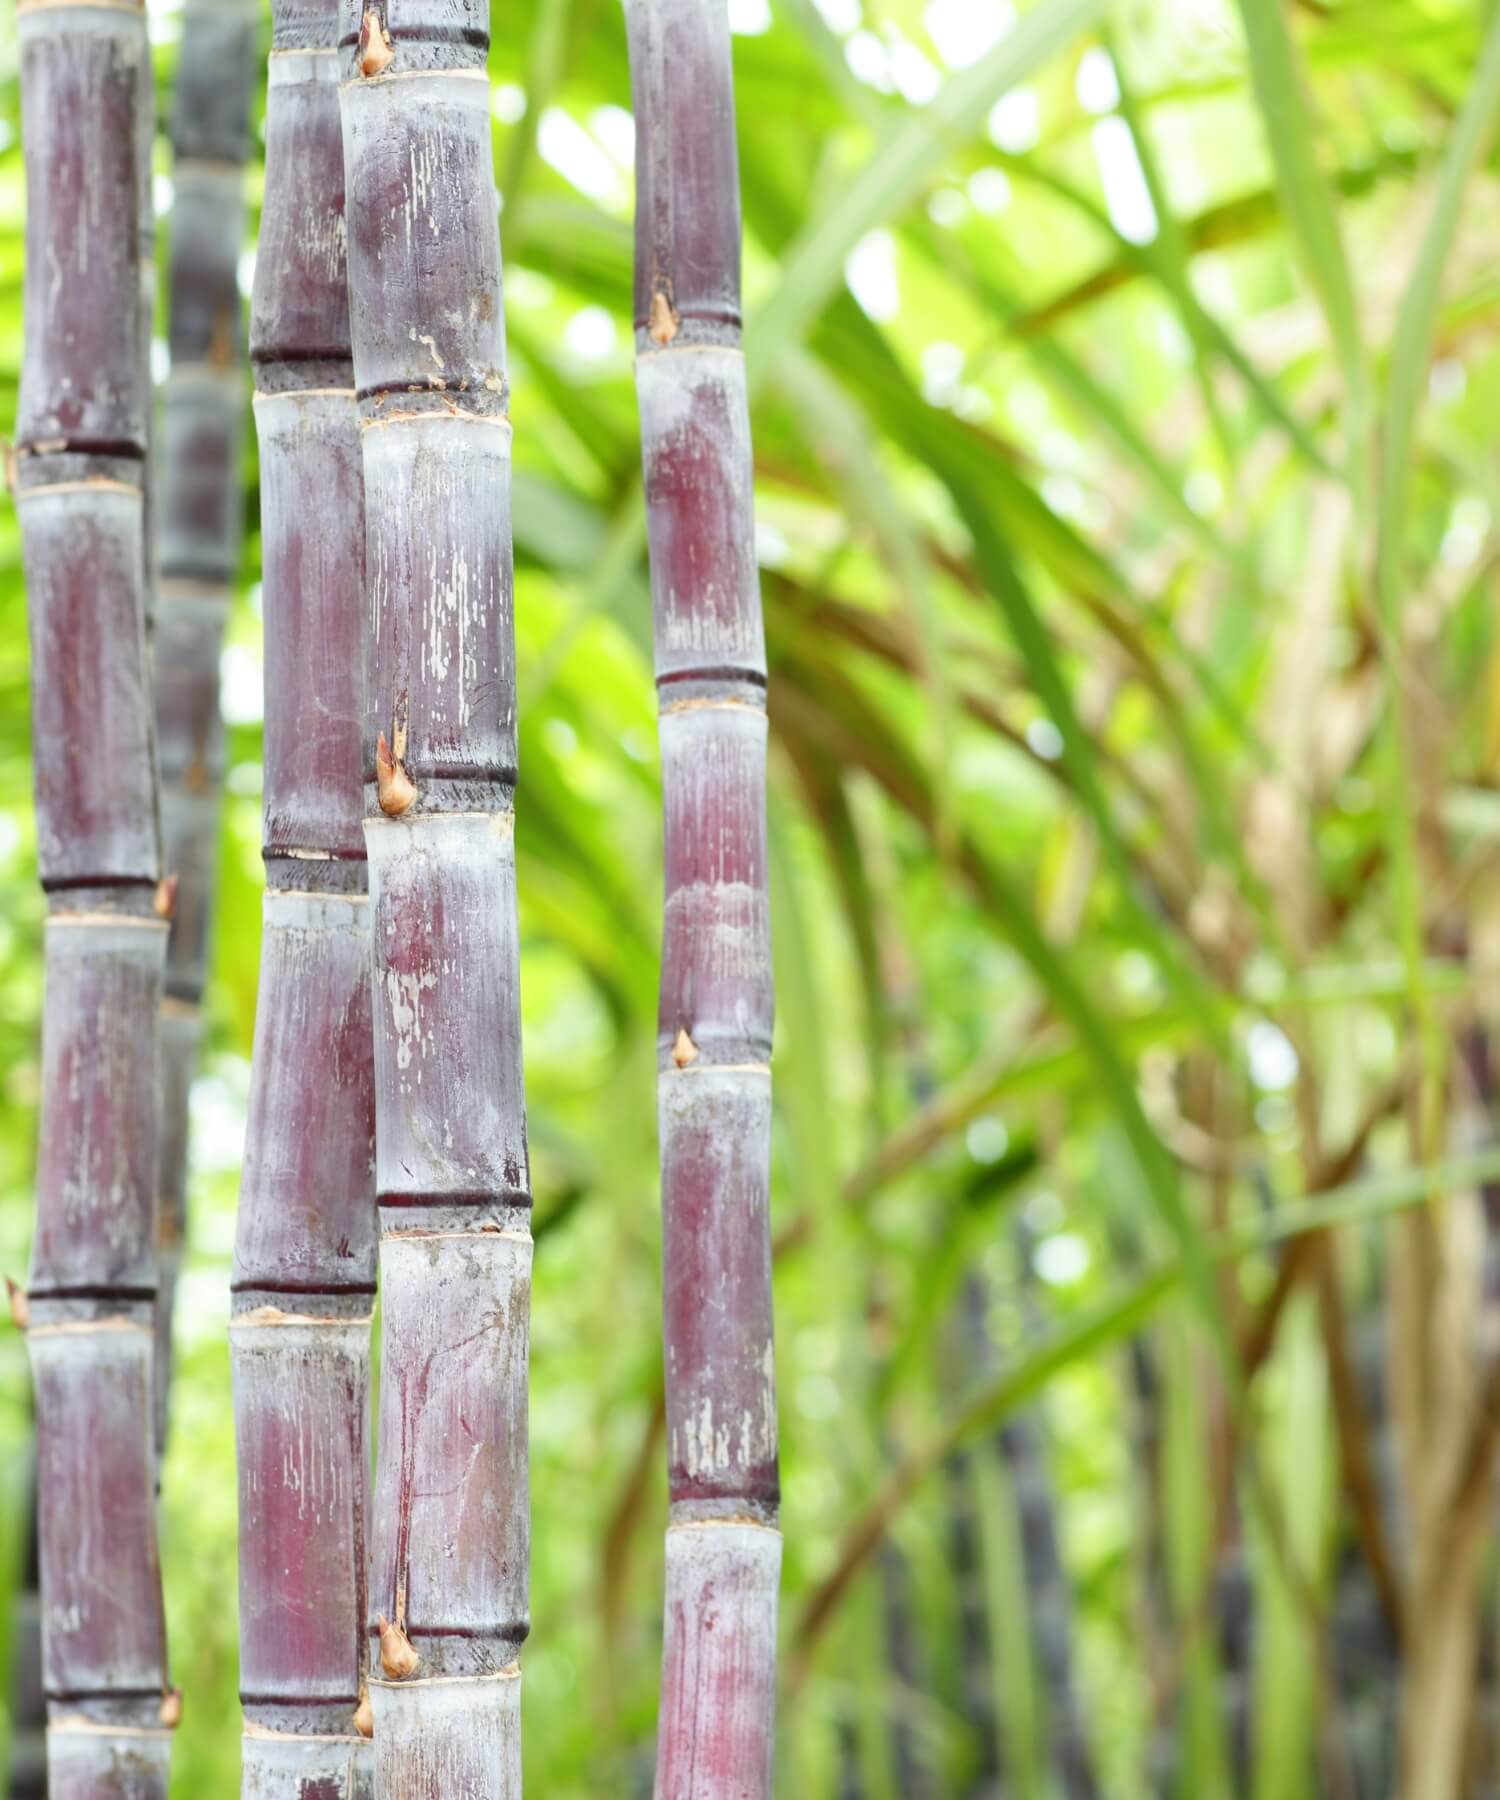 Sugarcane photos